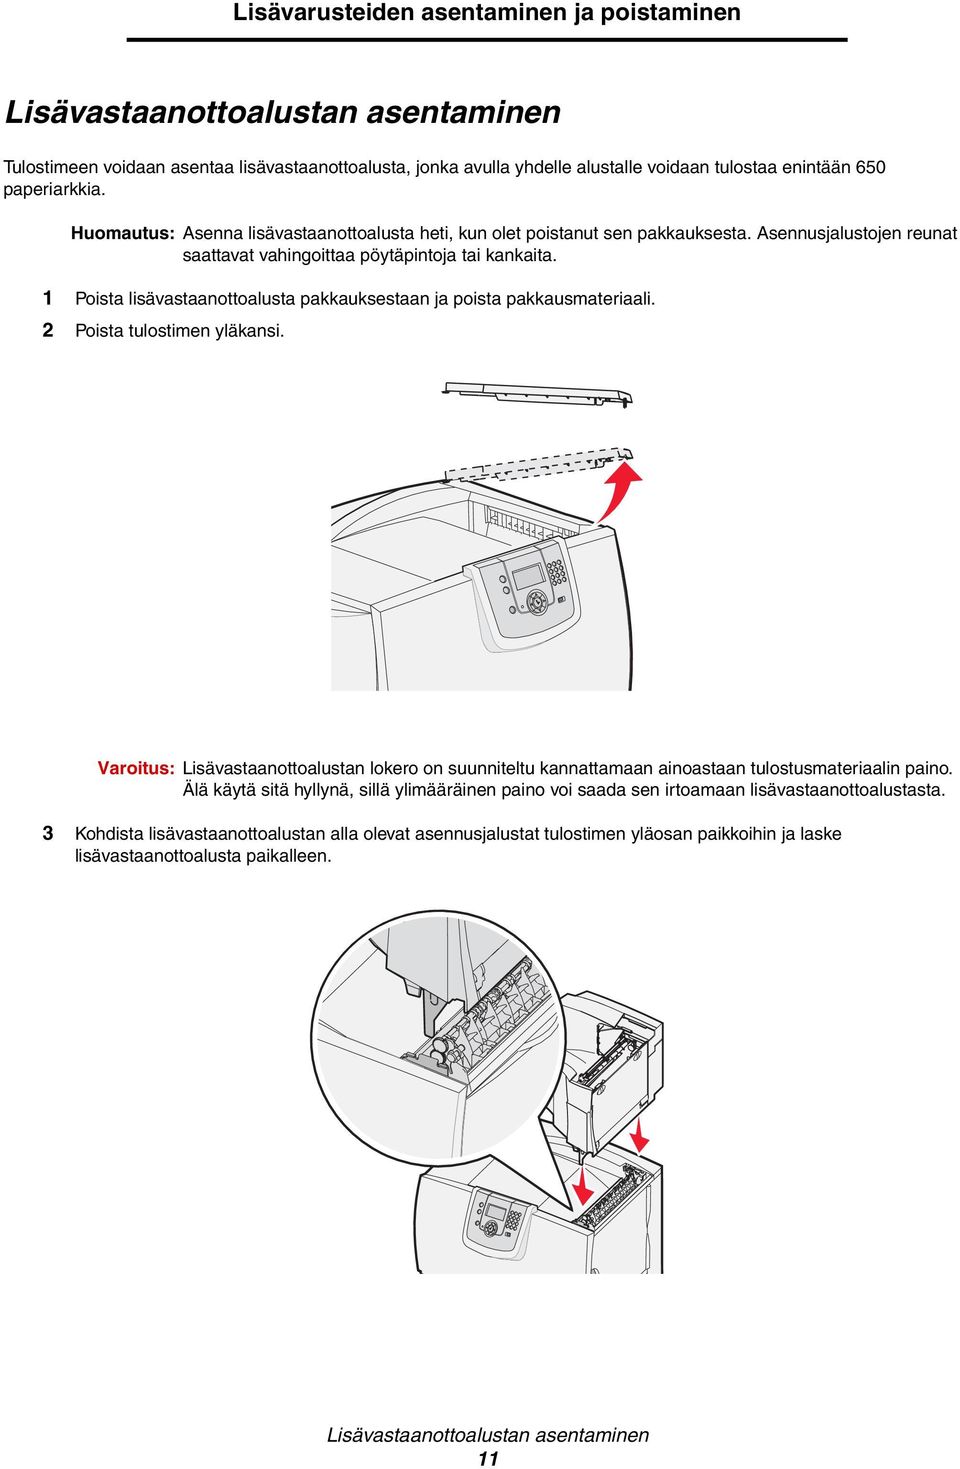 1 Poista lisävastaanottoalusta pakkauksestaan ja poista pakkausmateriaali. 2 Poista tulostimen yläkansi.